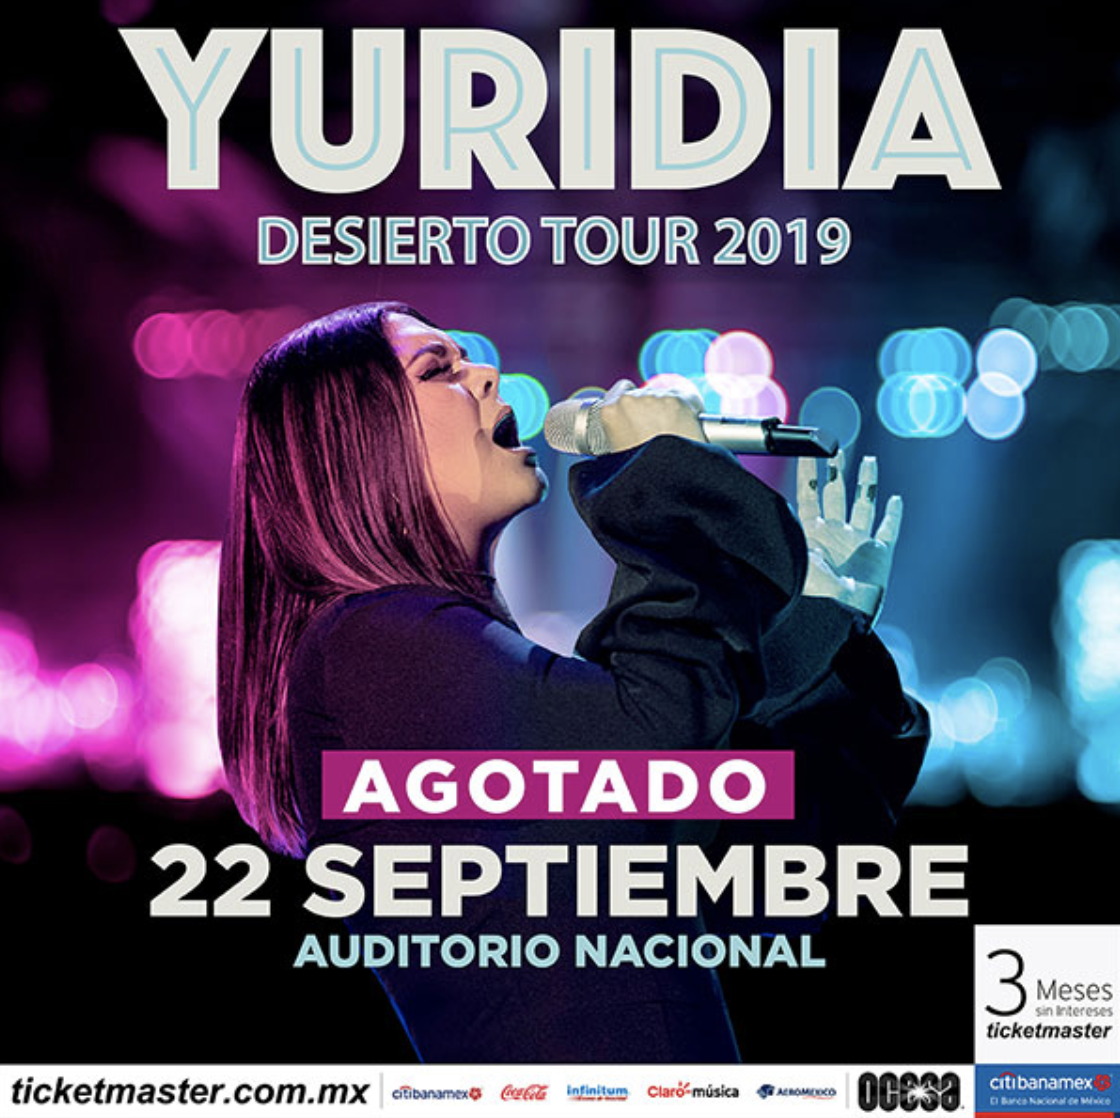 YURIDIA suma otro sold-out en el Auditorio Nacional